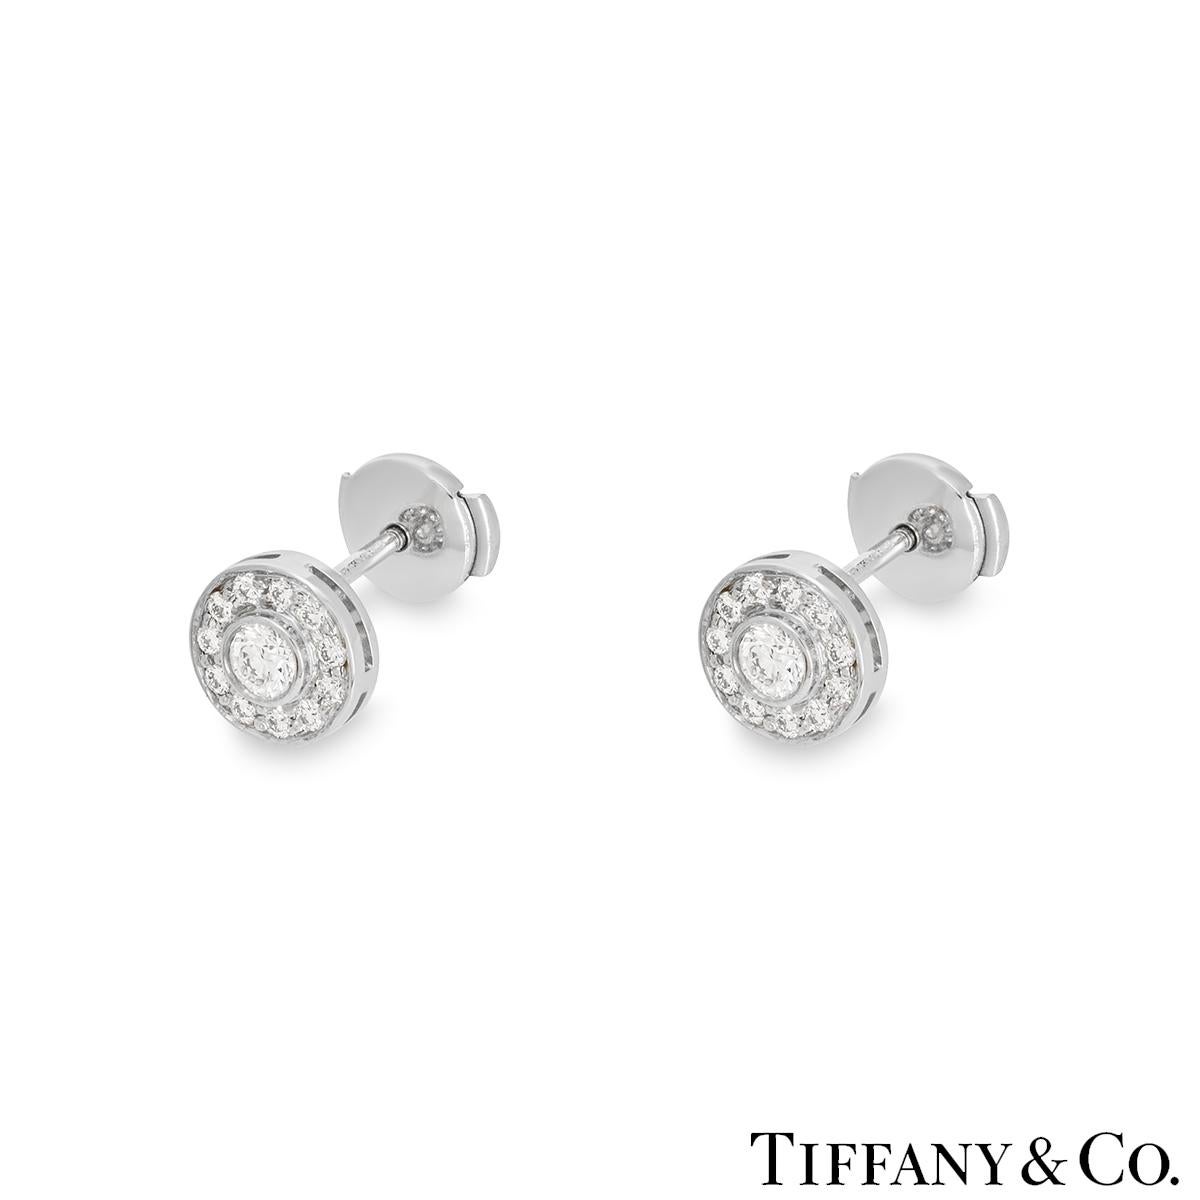 Ein schönes Paar Platin-Diamant-Ohrringe von Tiffany & Co. aus der Circlet-Kollektion. In der Mitte jedes Ohrrings ist ein runder Diamant im Brillantschliff mit einem ungefähren Gesamtgewicht von 0,30 ct, Farbe F und Reinheit VS, gefasst. Den